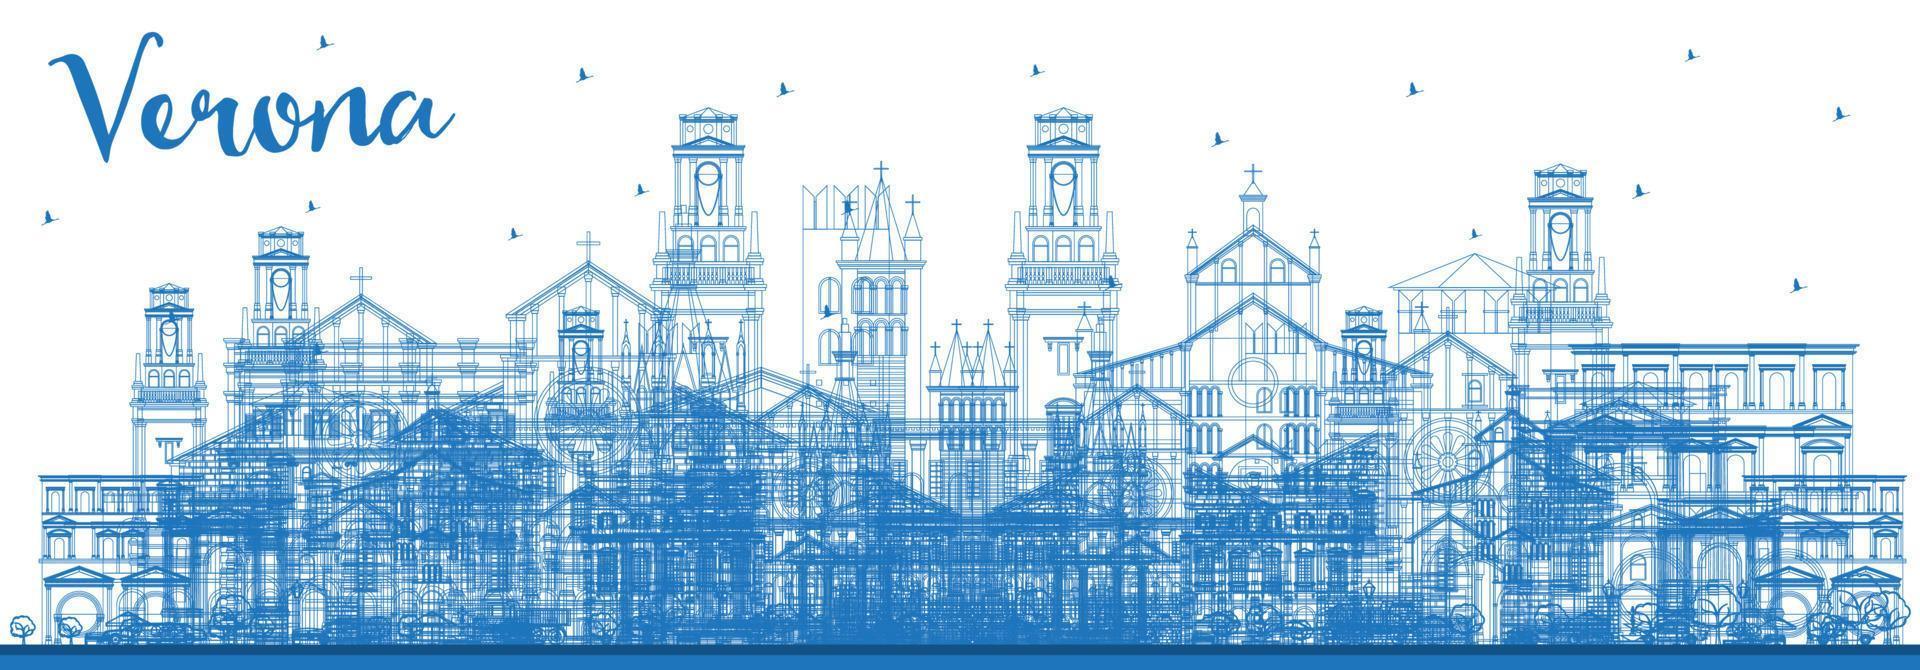 översikt verona Italien stad horisont med blå byggnader. vektor